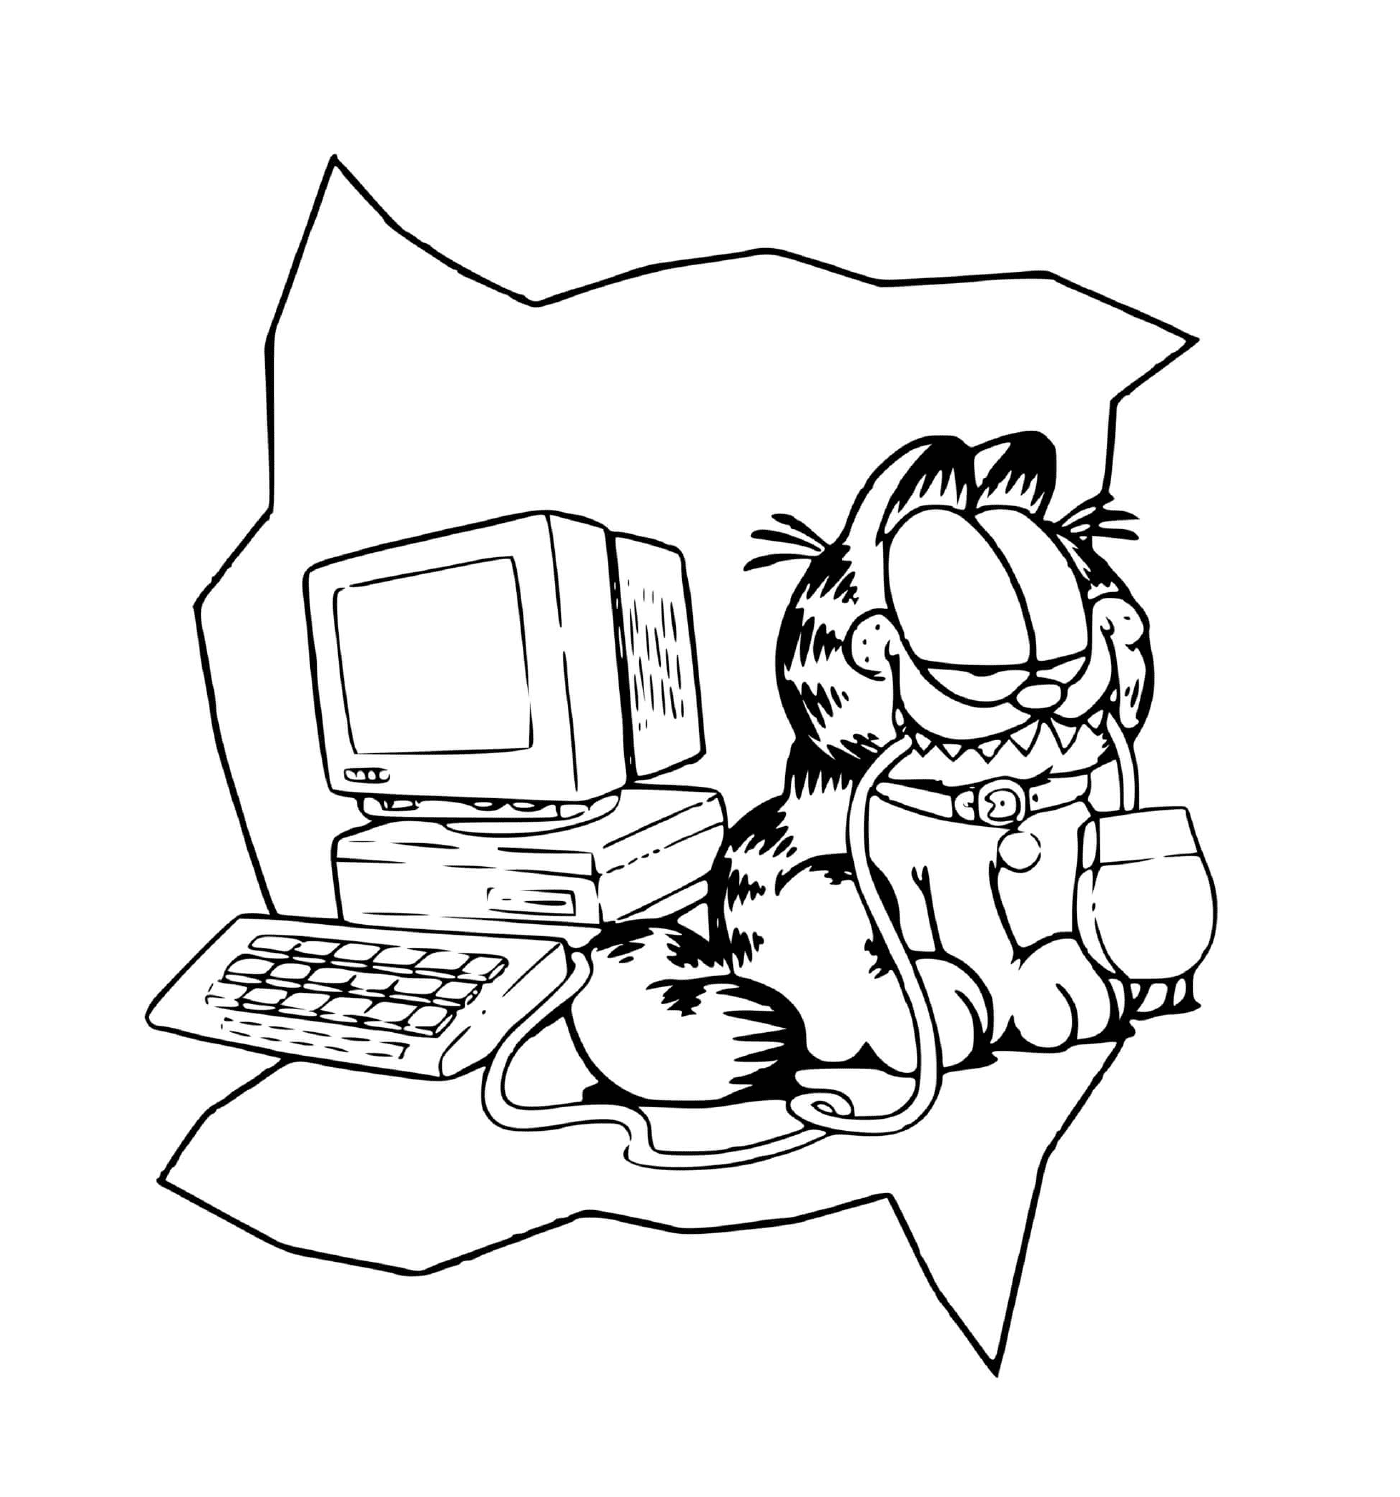  Garfield gosta de brincar com um computador 